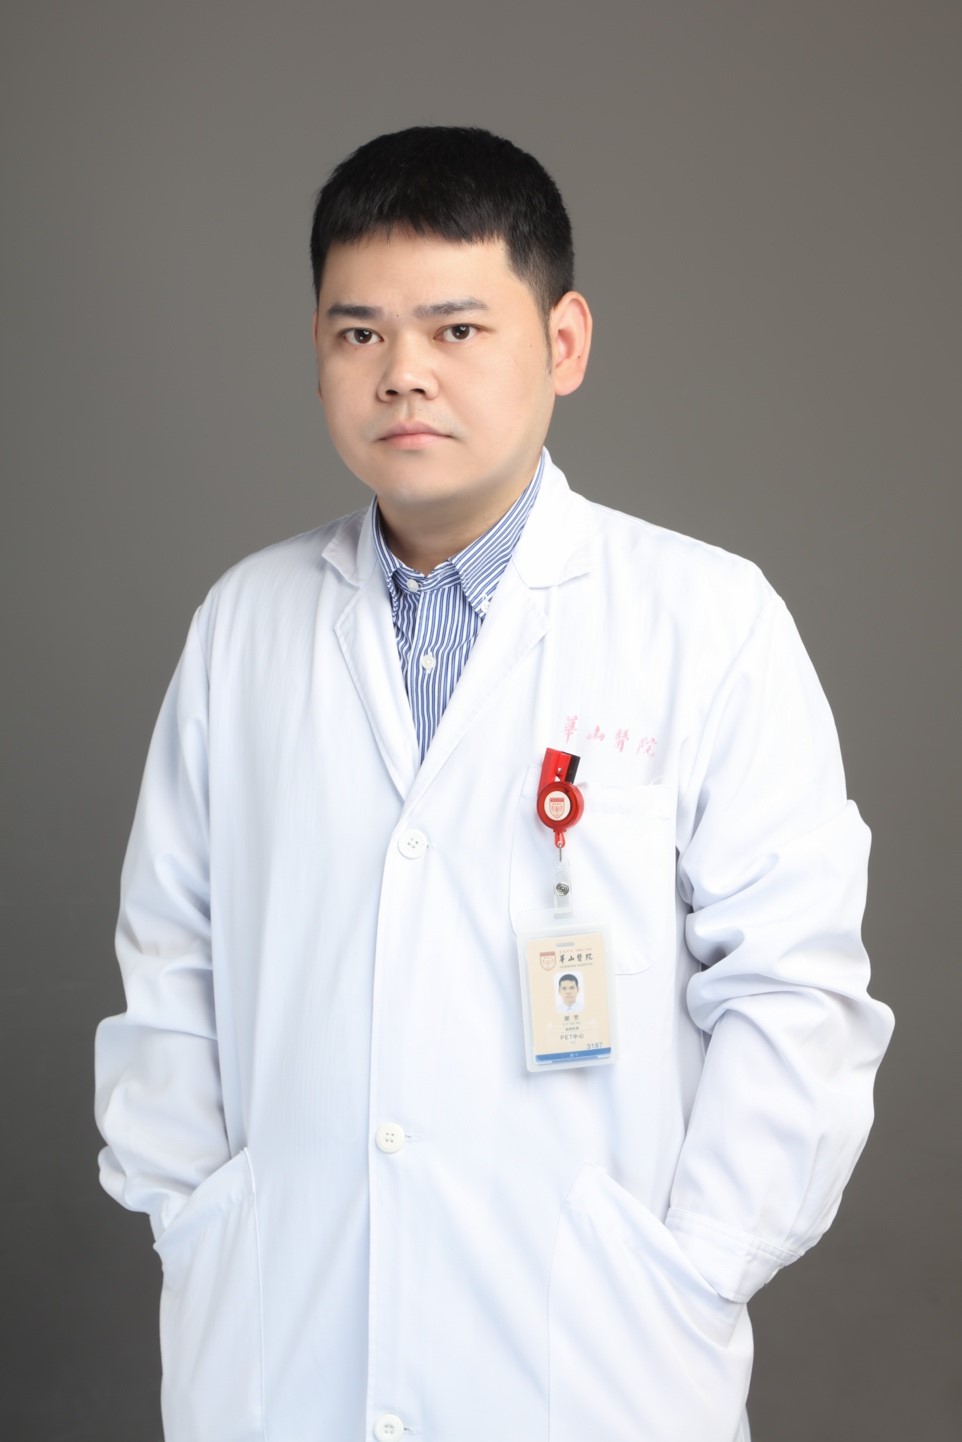 Fang Xie, PhD